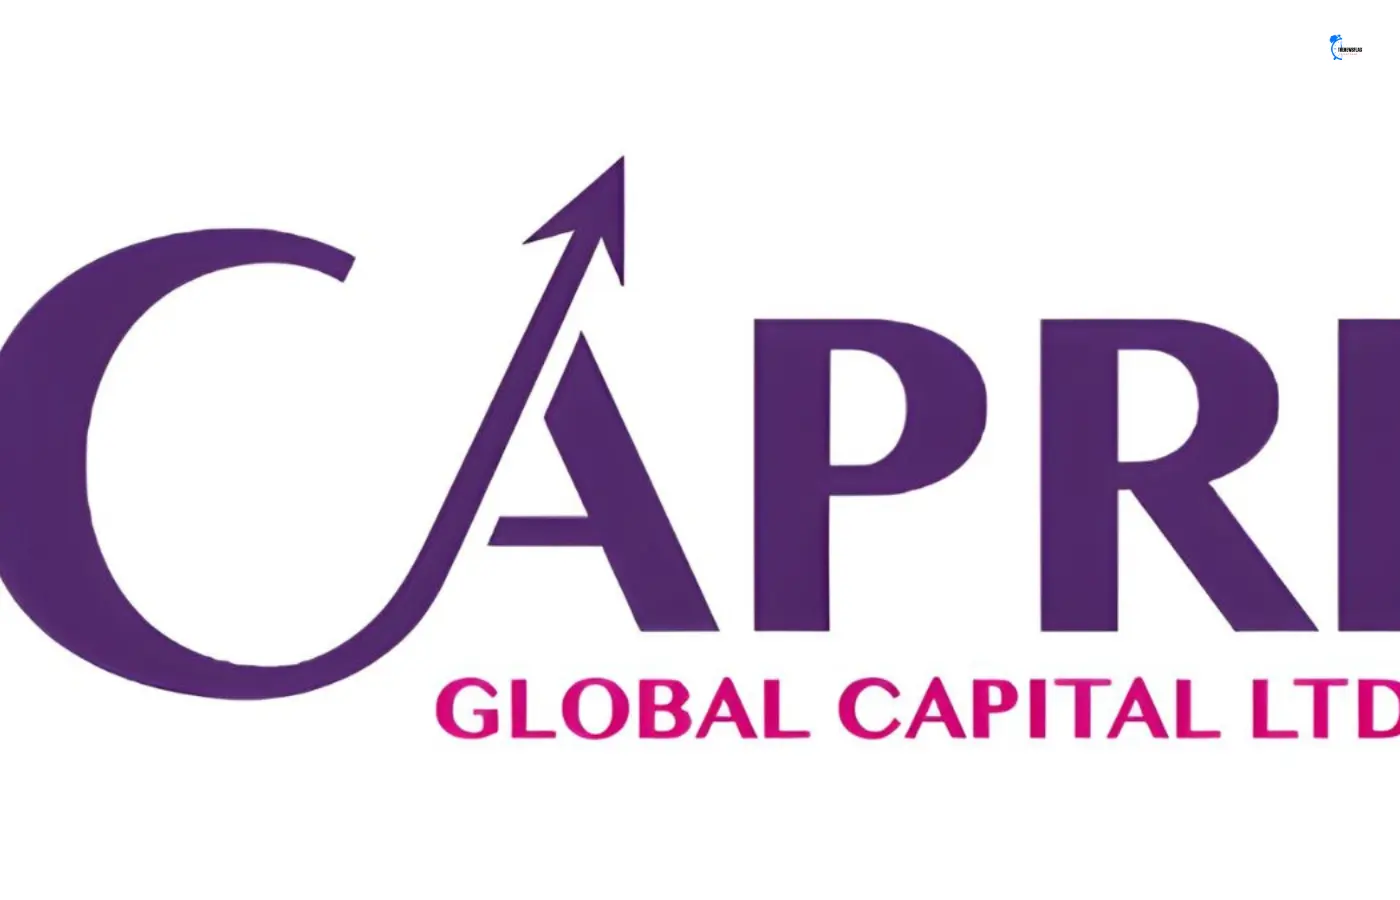 Capri Global Capital stock price